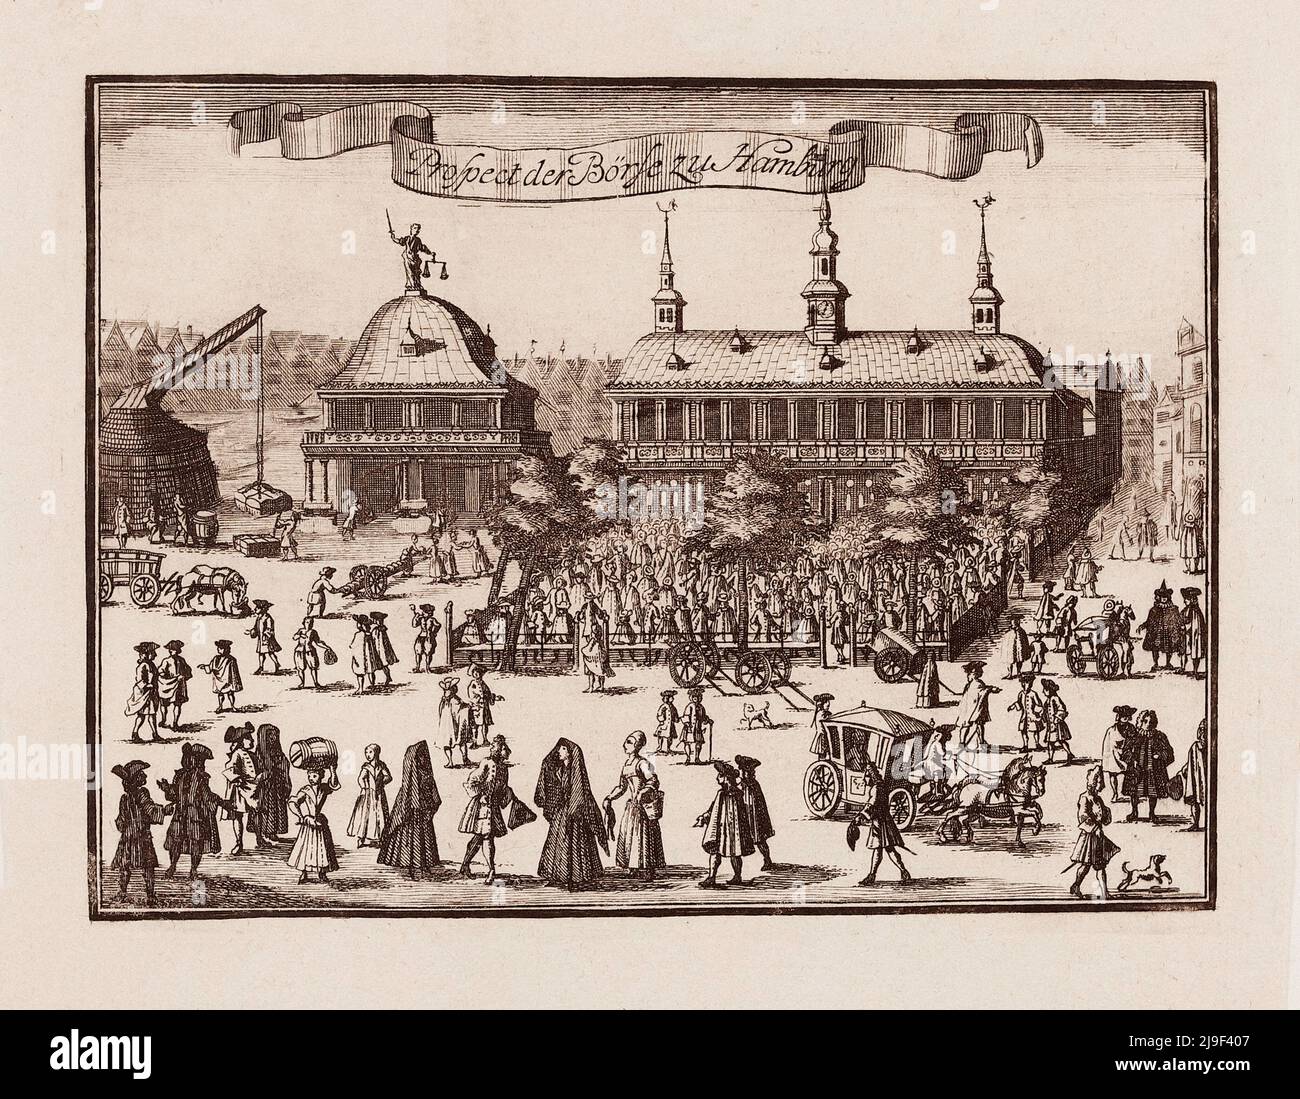 Incisione di 18th-secolo della prospettiva di borsa ad Amburgo. La Borsa di Amburgo (in tedesco: Hamburger Börse) è la più antica borsa di Amburgo Foto Stock